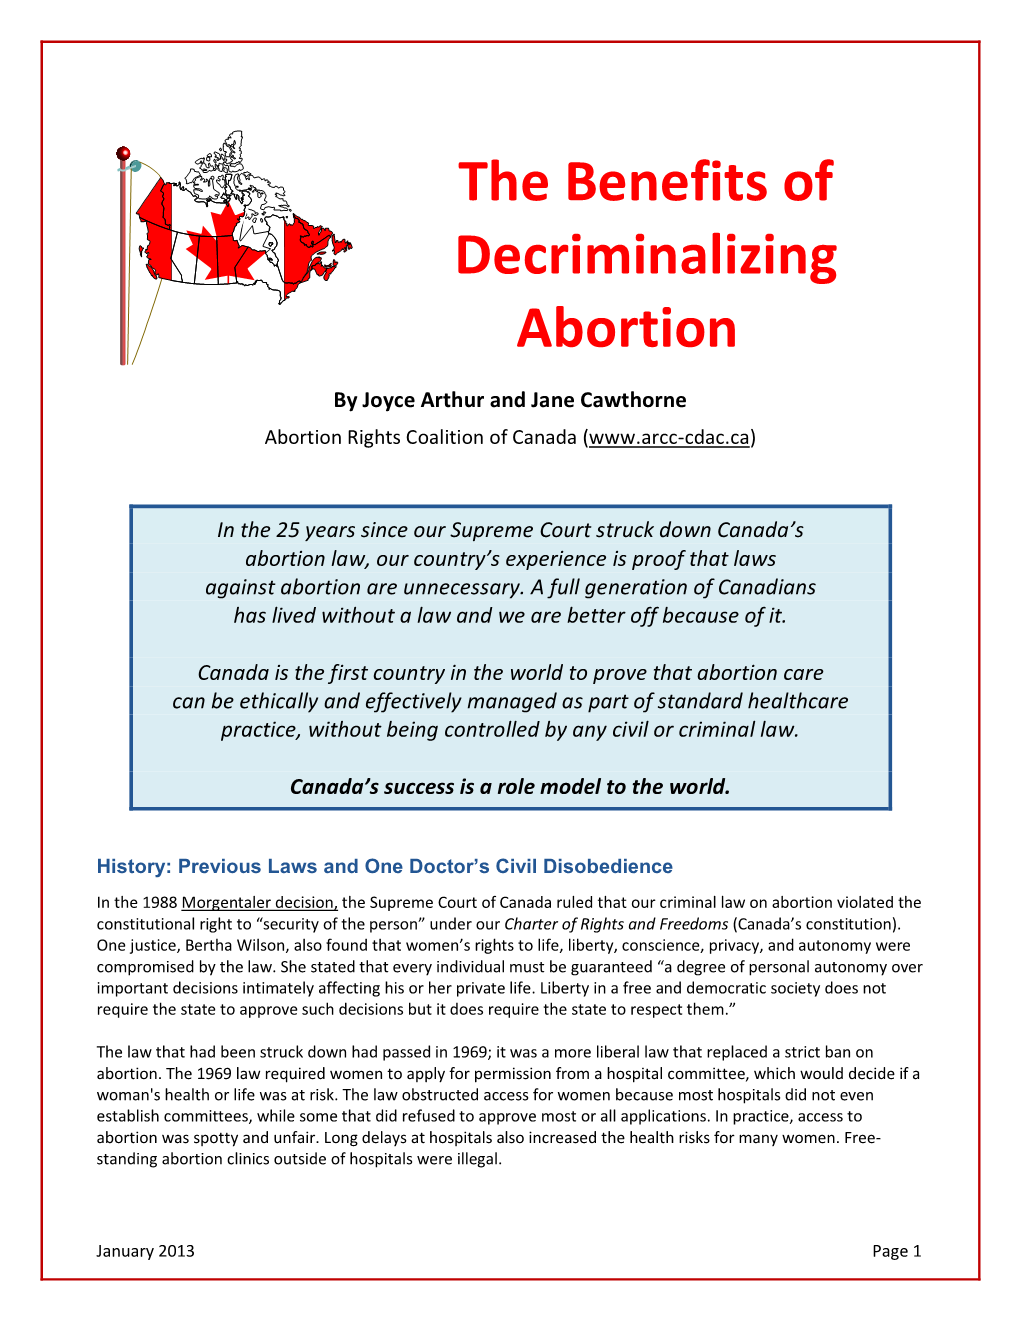 The Benefits of Decriminalizing Abortion